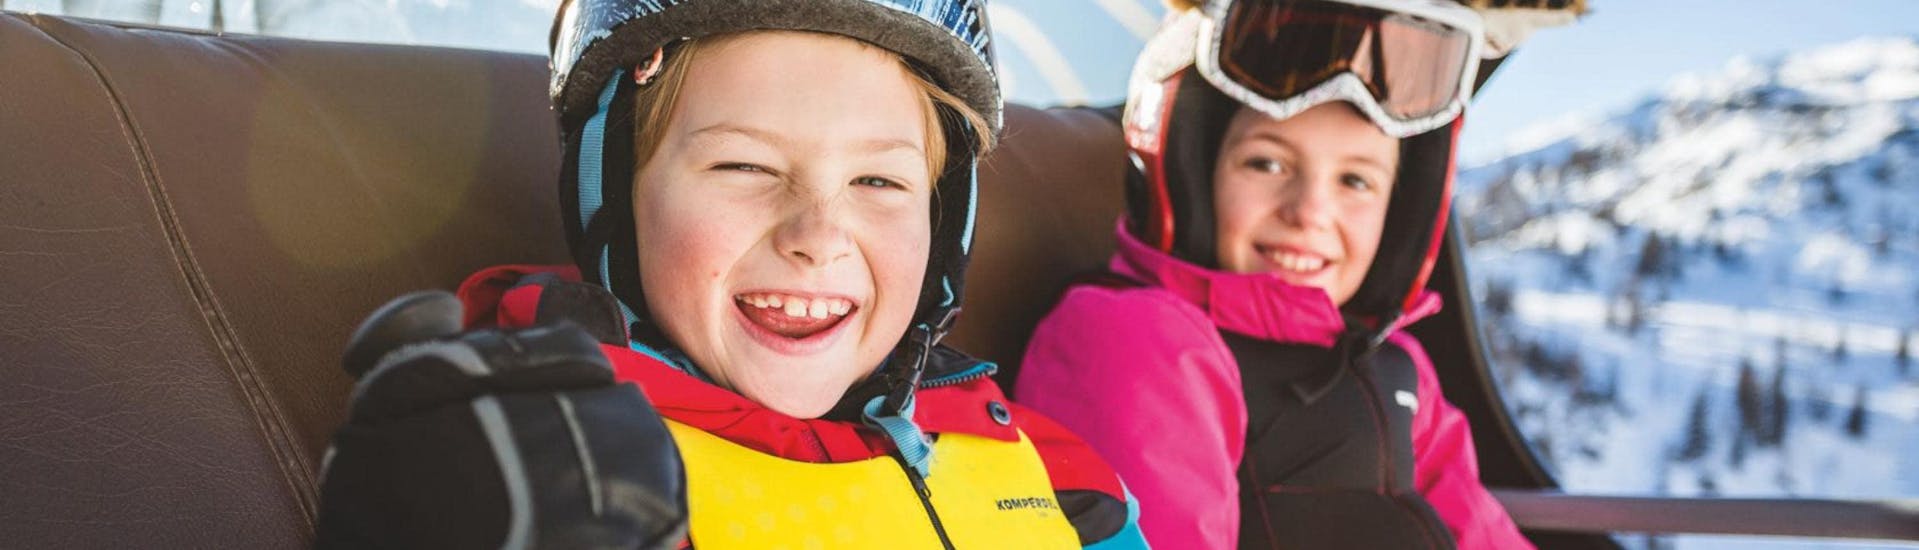 Snowboardlessen voor kinderen (6-16 jaar) voor beginners - Halve dag.